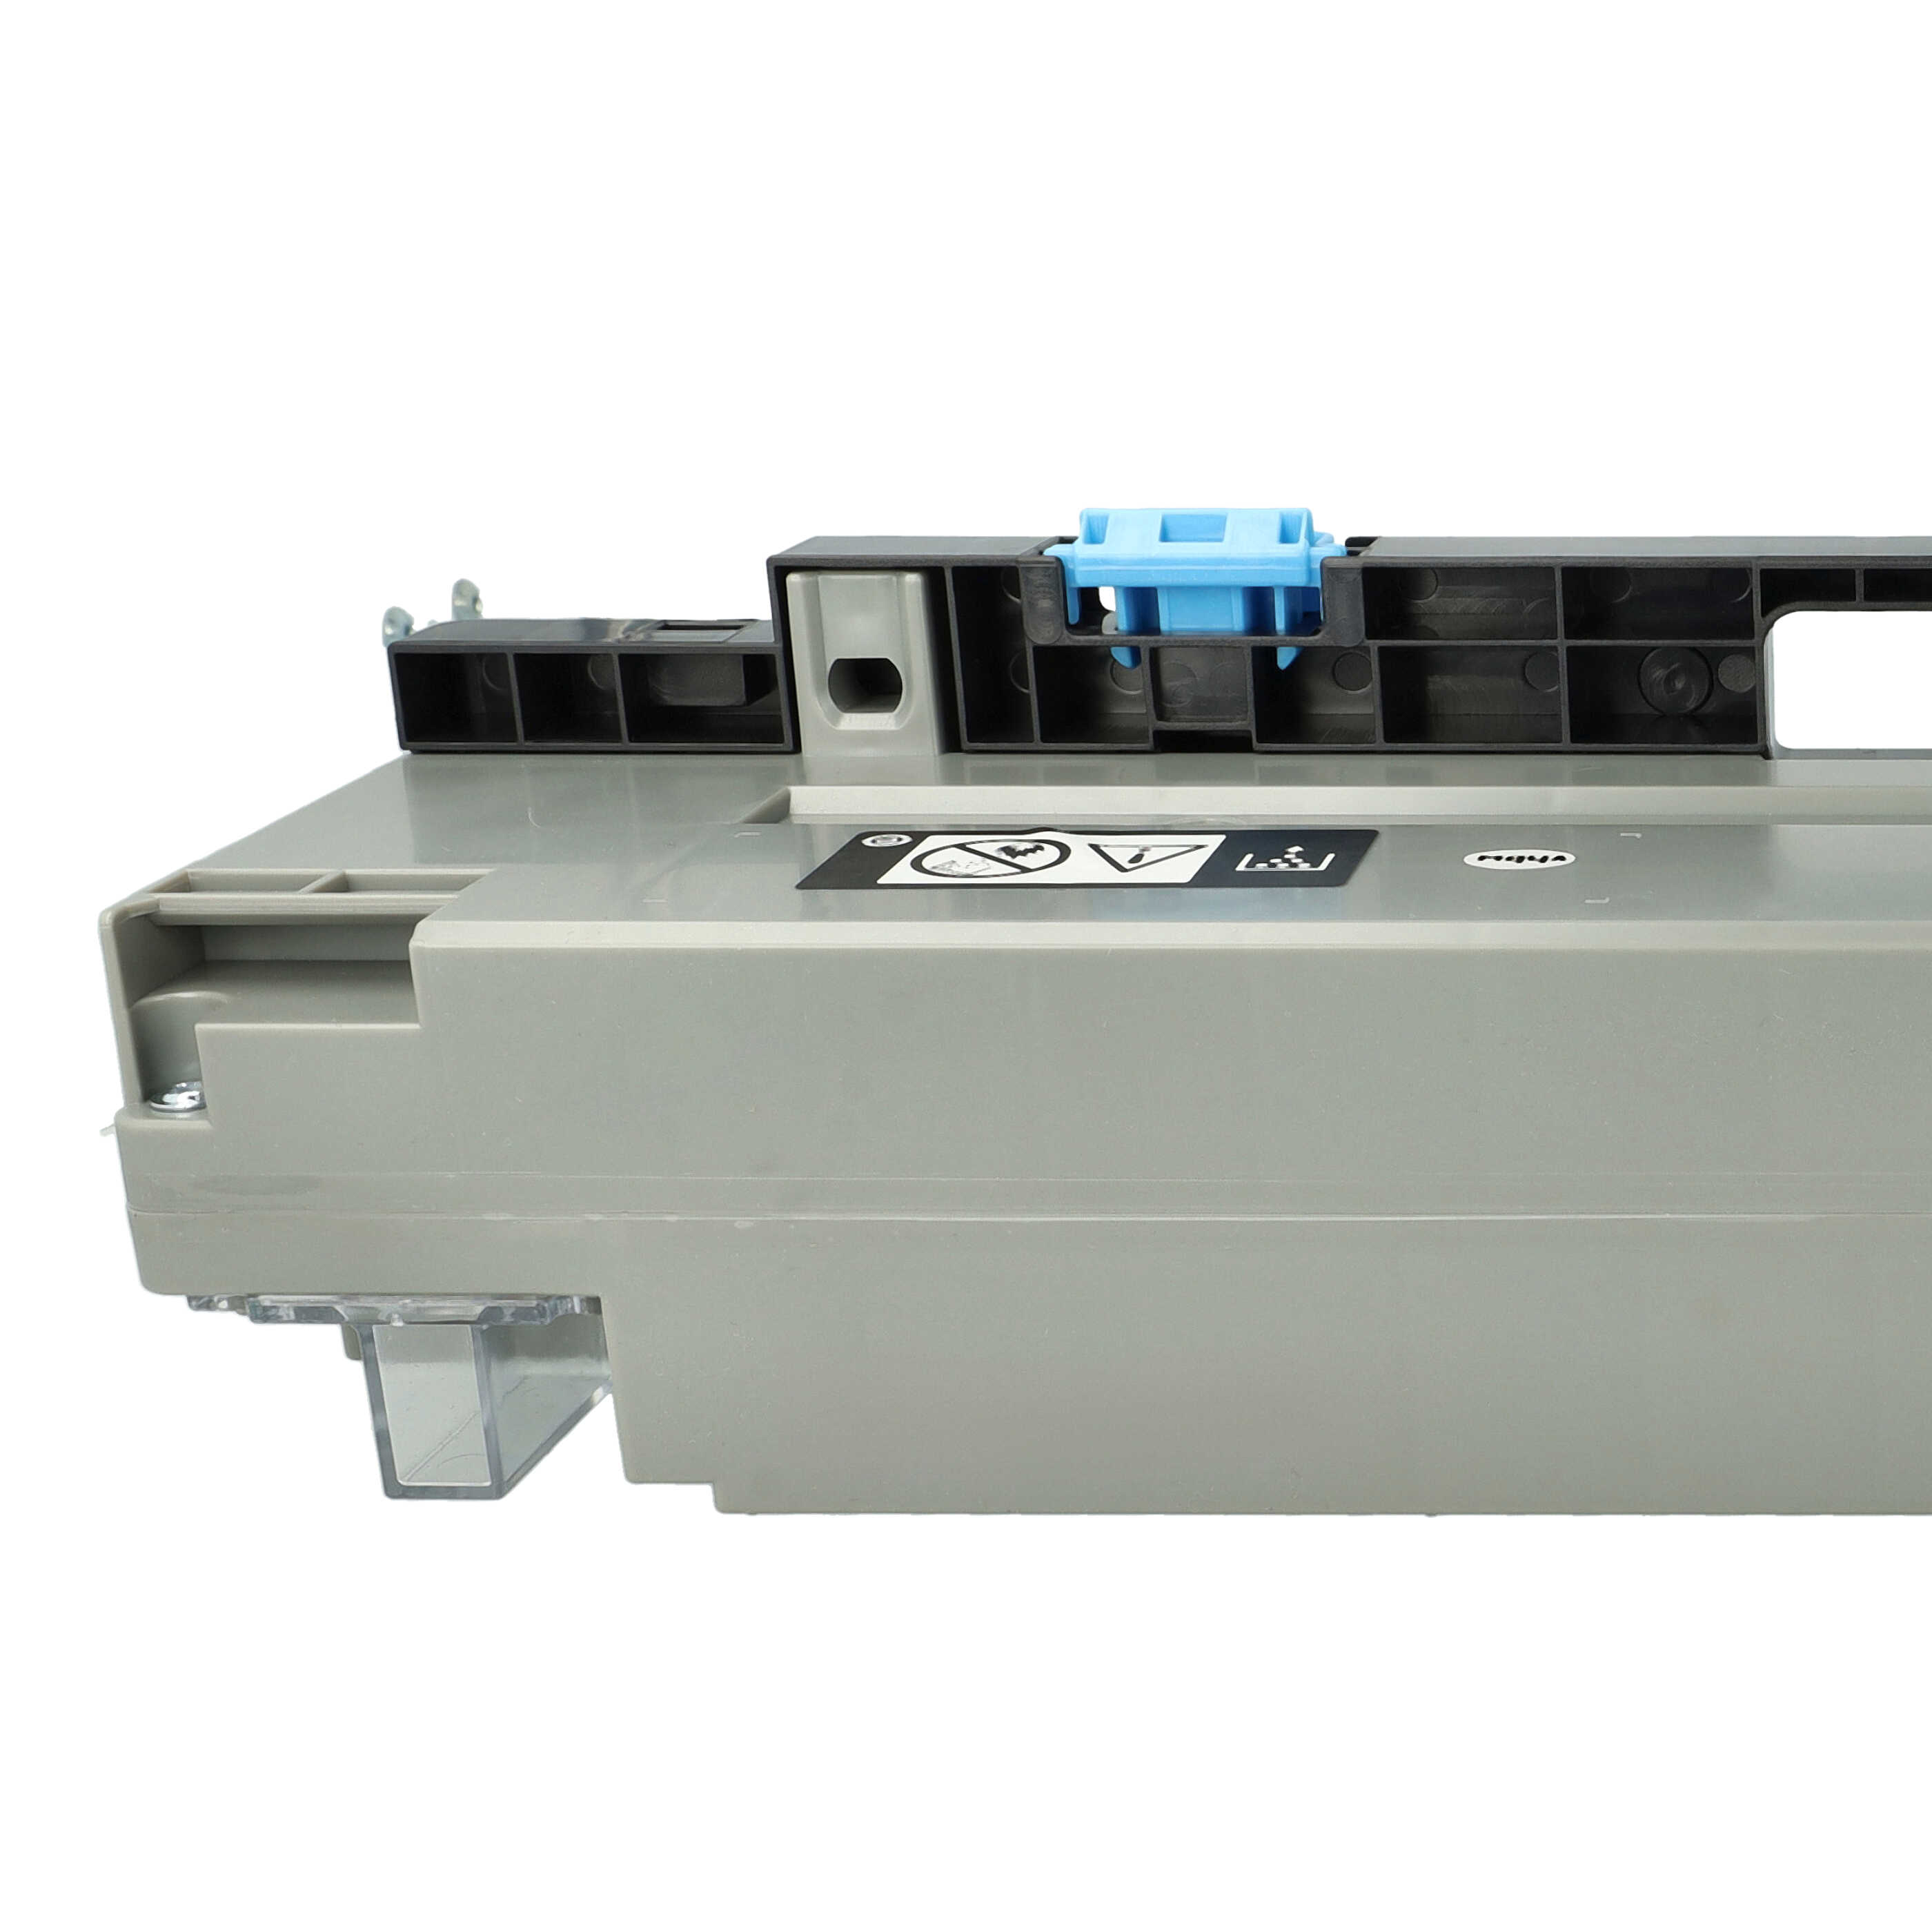 Resttonerbehälter als Ersatz für Konica Minolta für Olivetti D-Color 259 Laserdrucker u.a. - grau